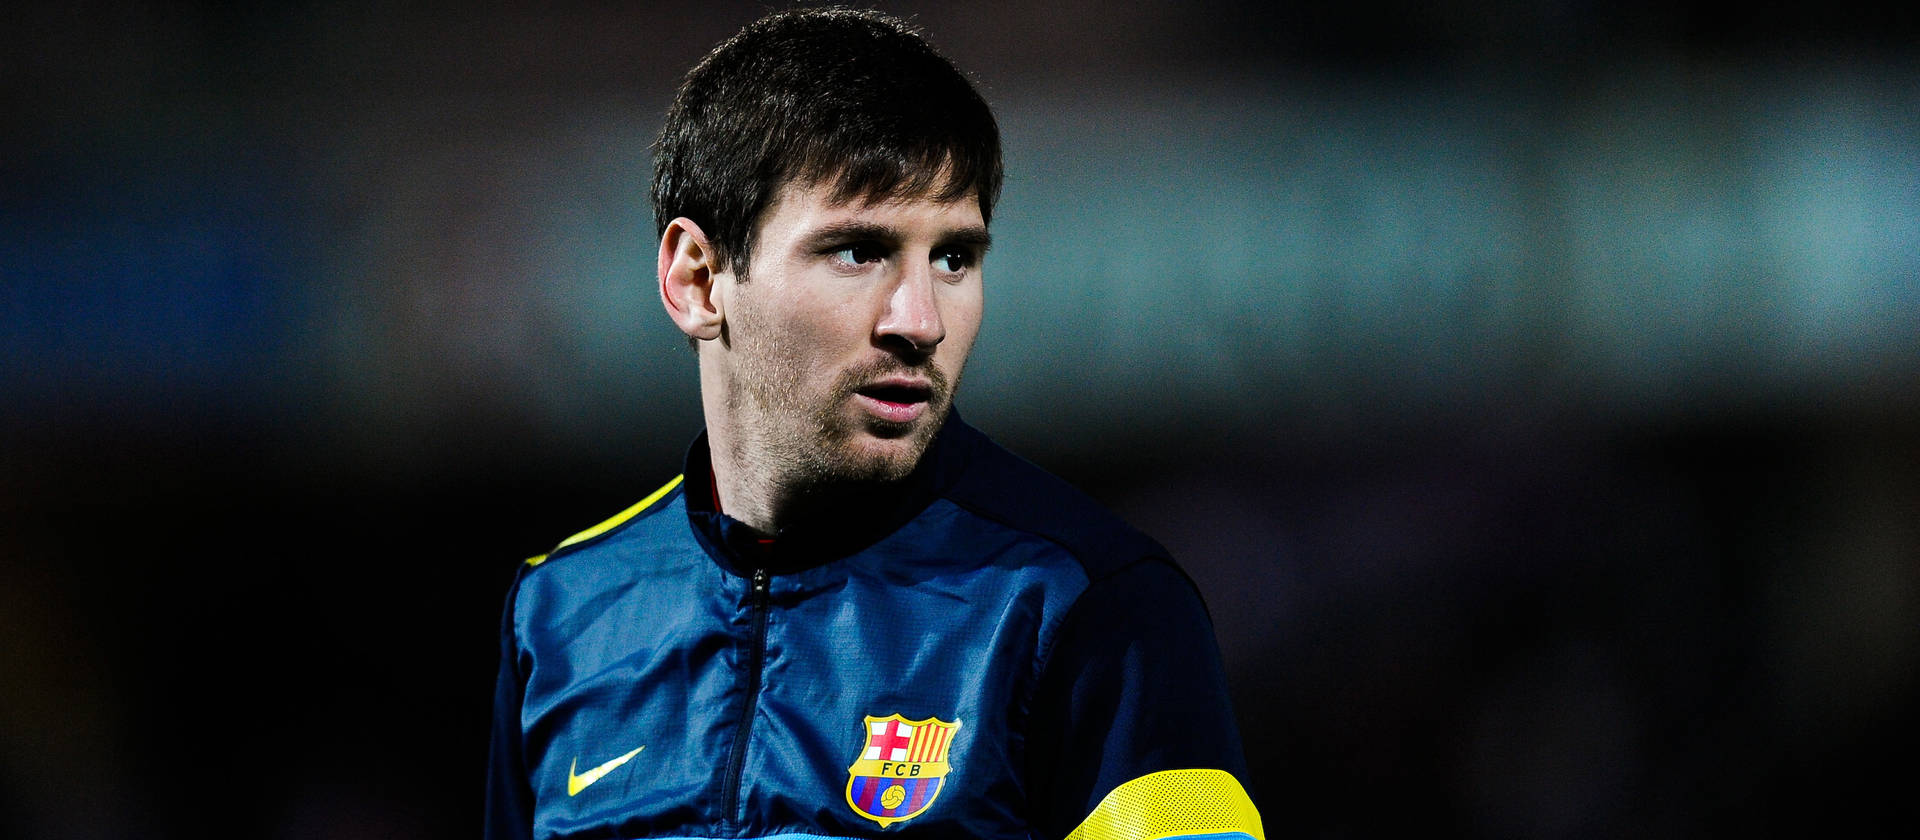 Lionel Messi Dark Blue Jacket Background